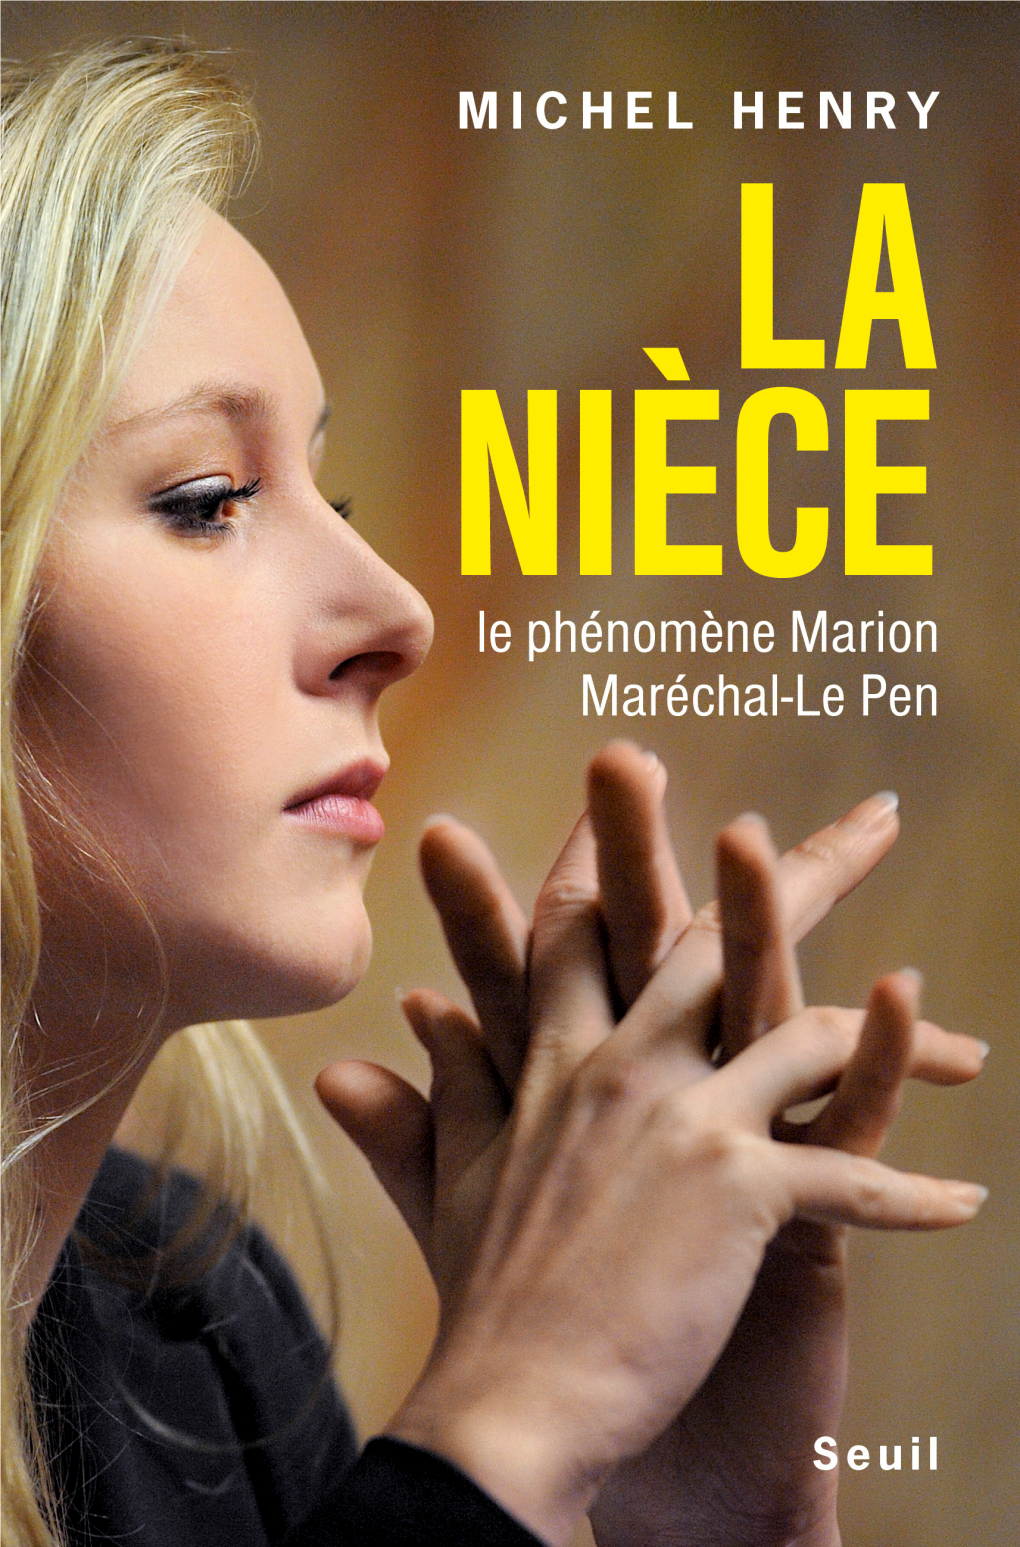 Le Phénomène Marion Maréchal-Le